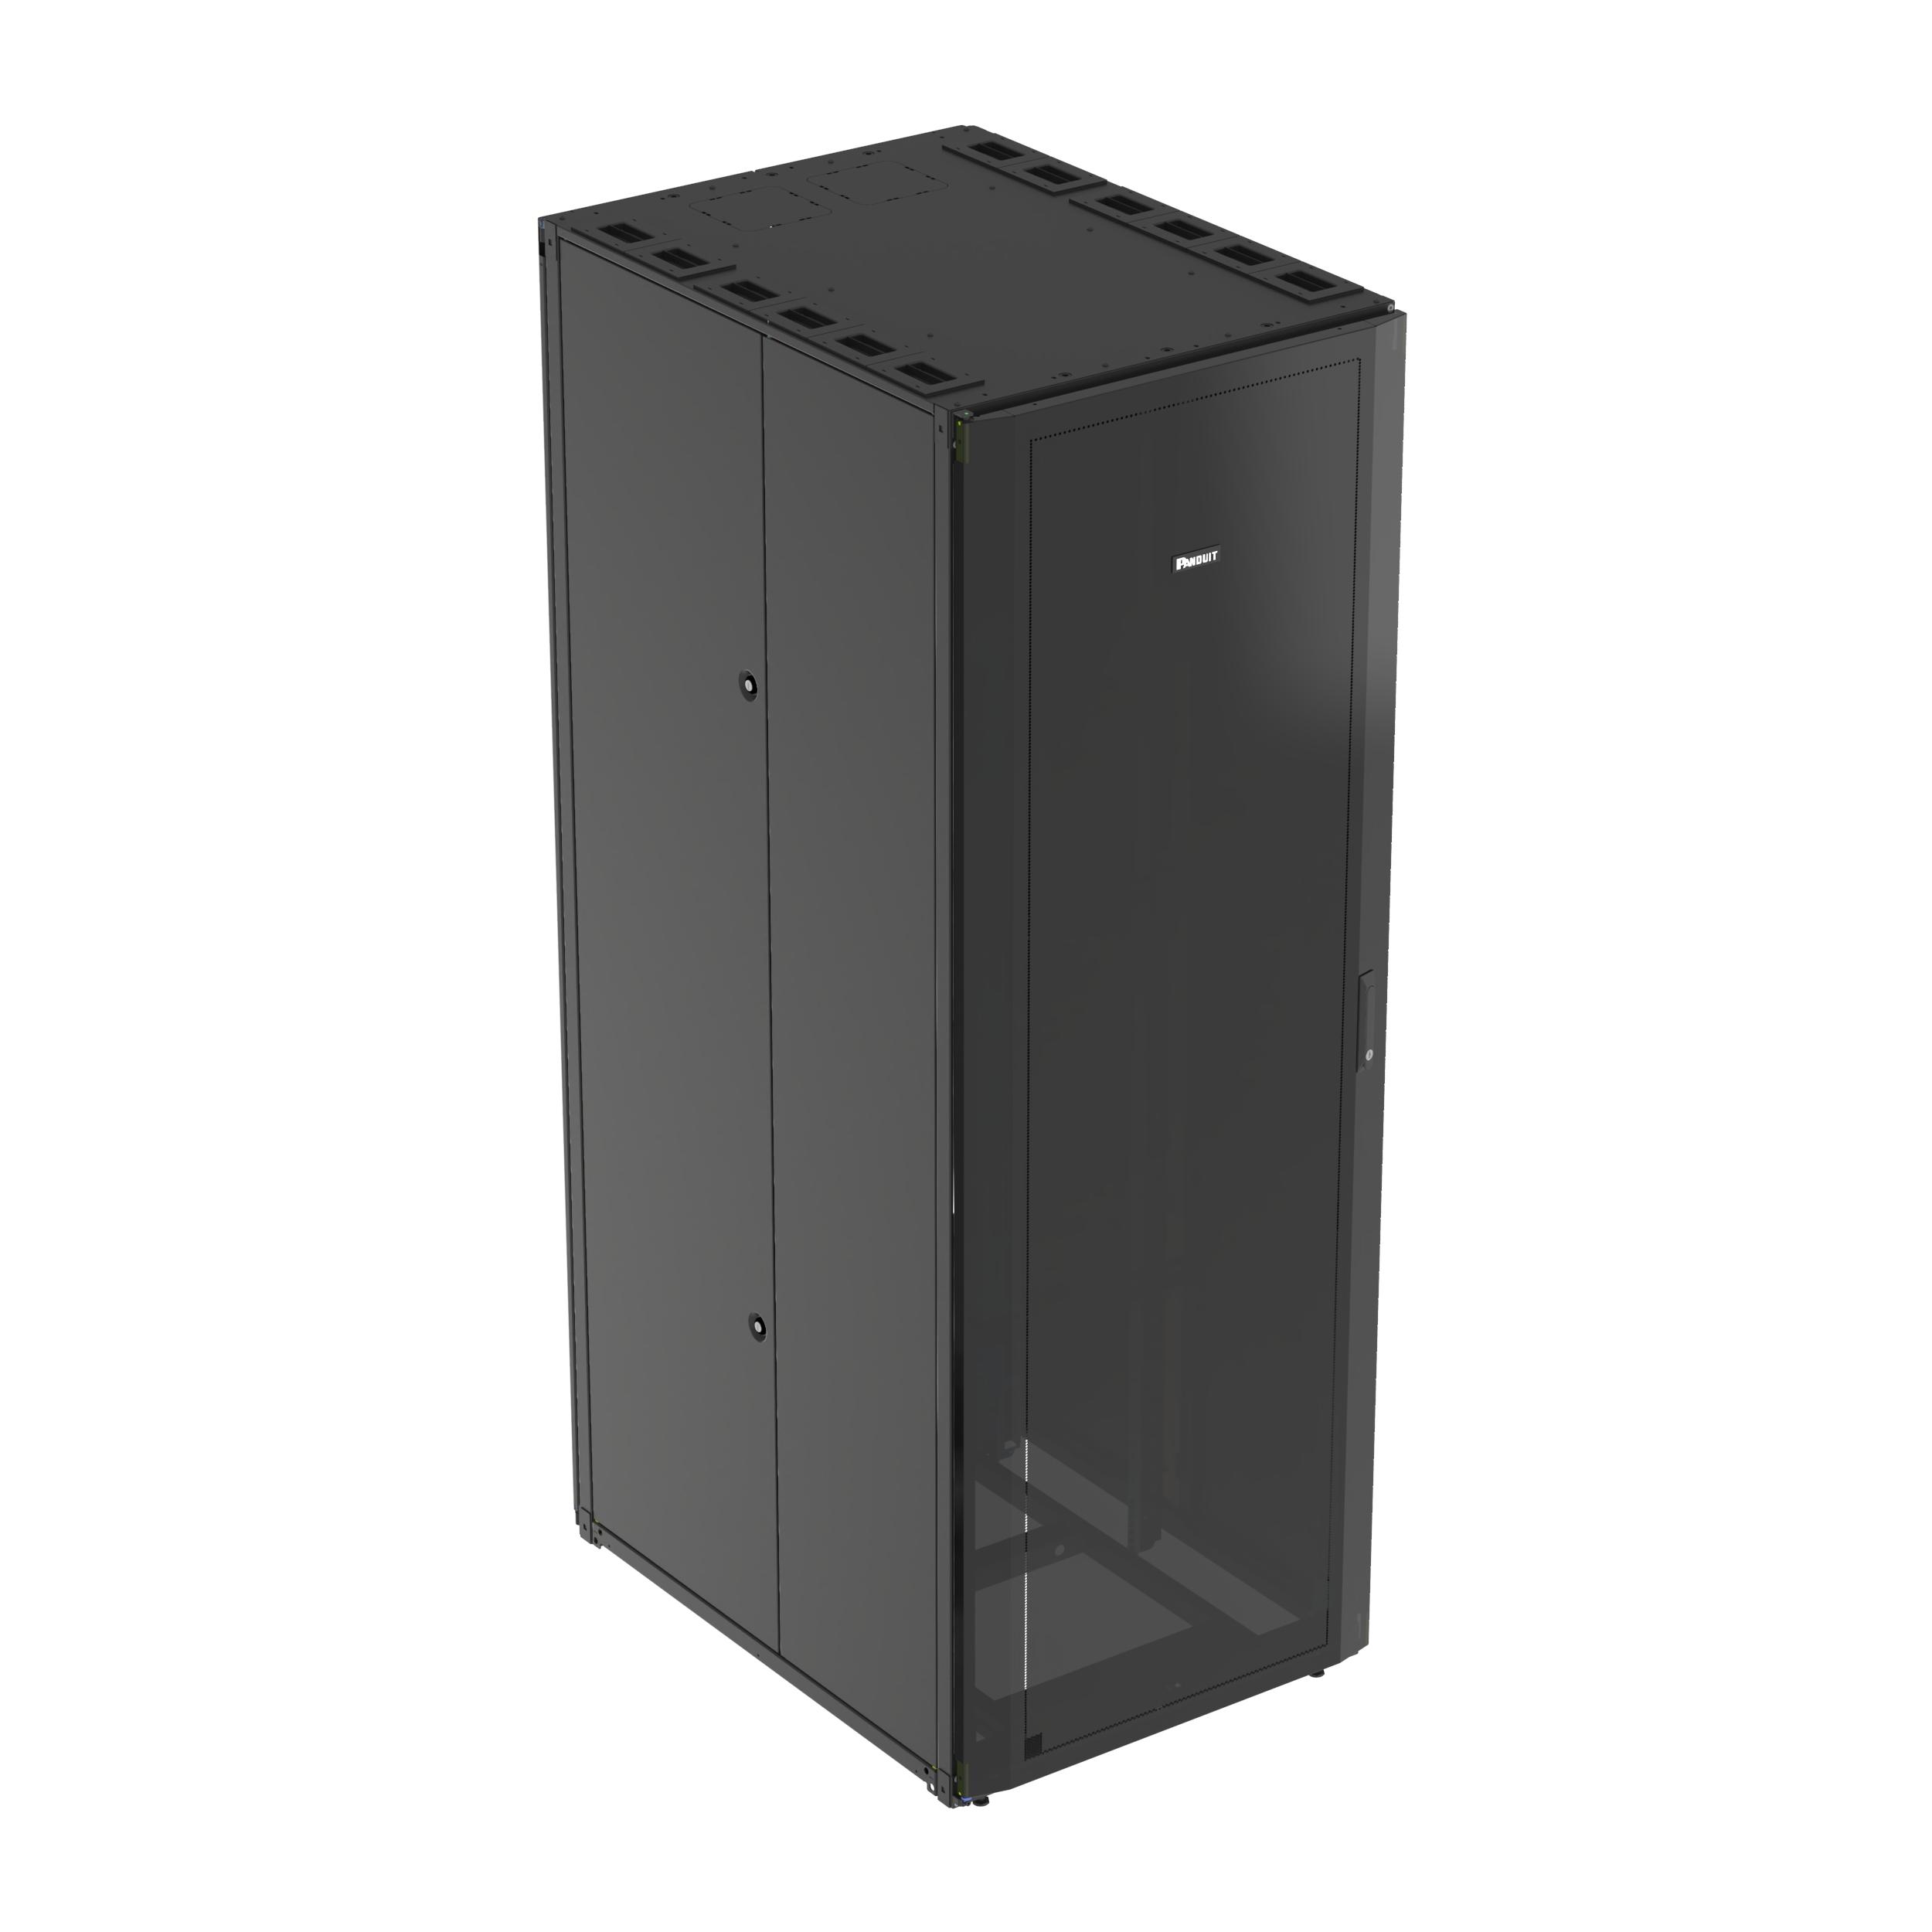 Panduit S6222BU Net-Access™ S-Type Cabinet